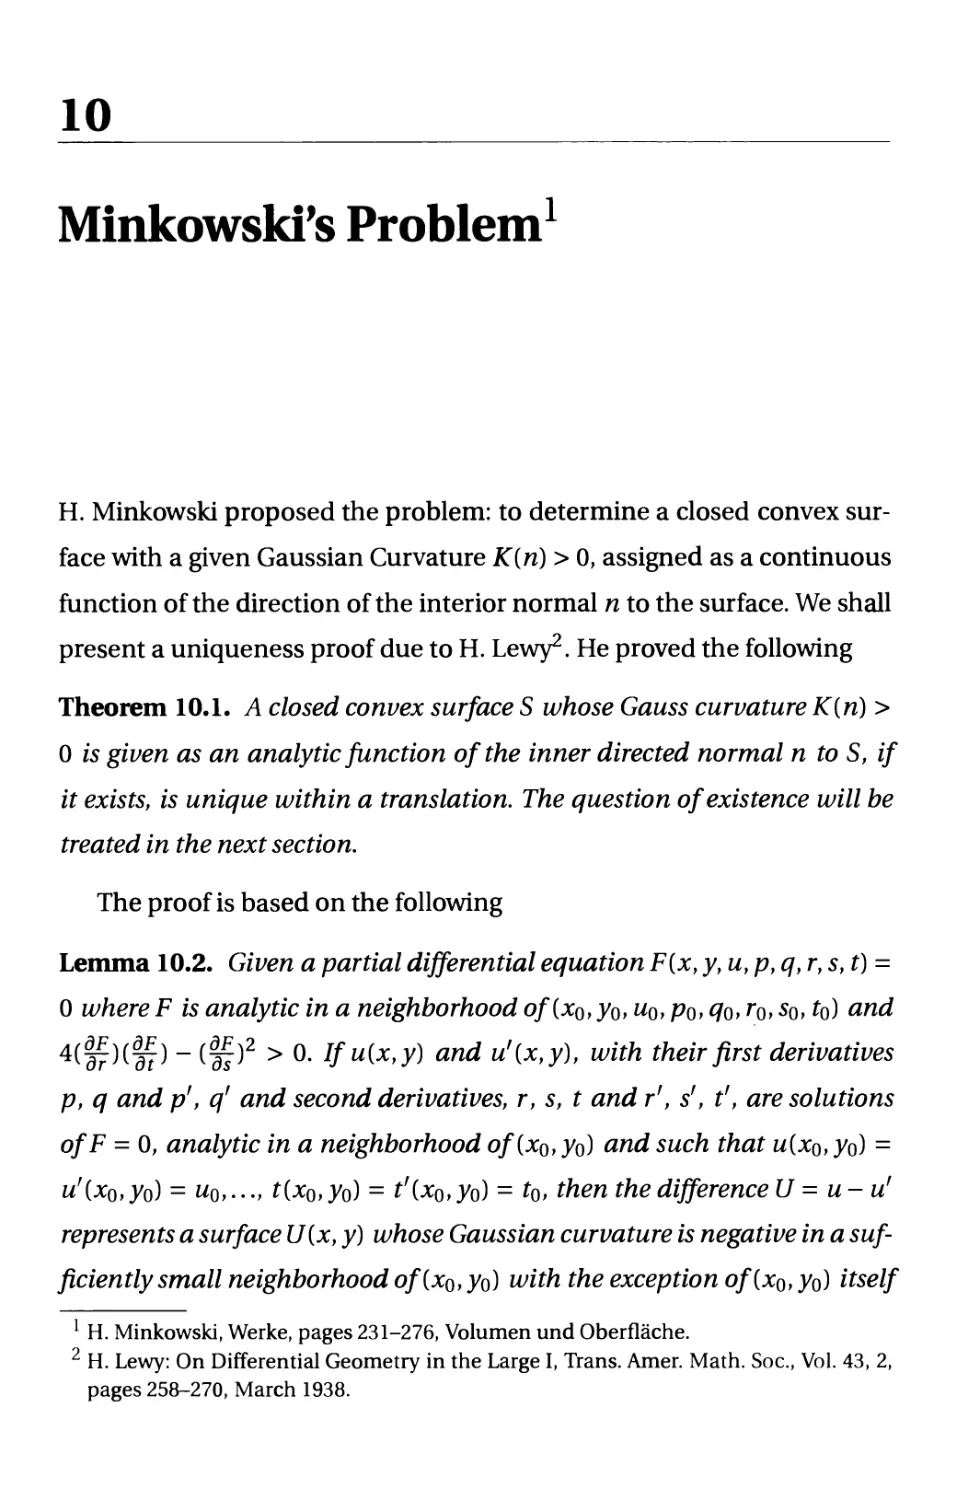 10. Minkowski's Problem